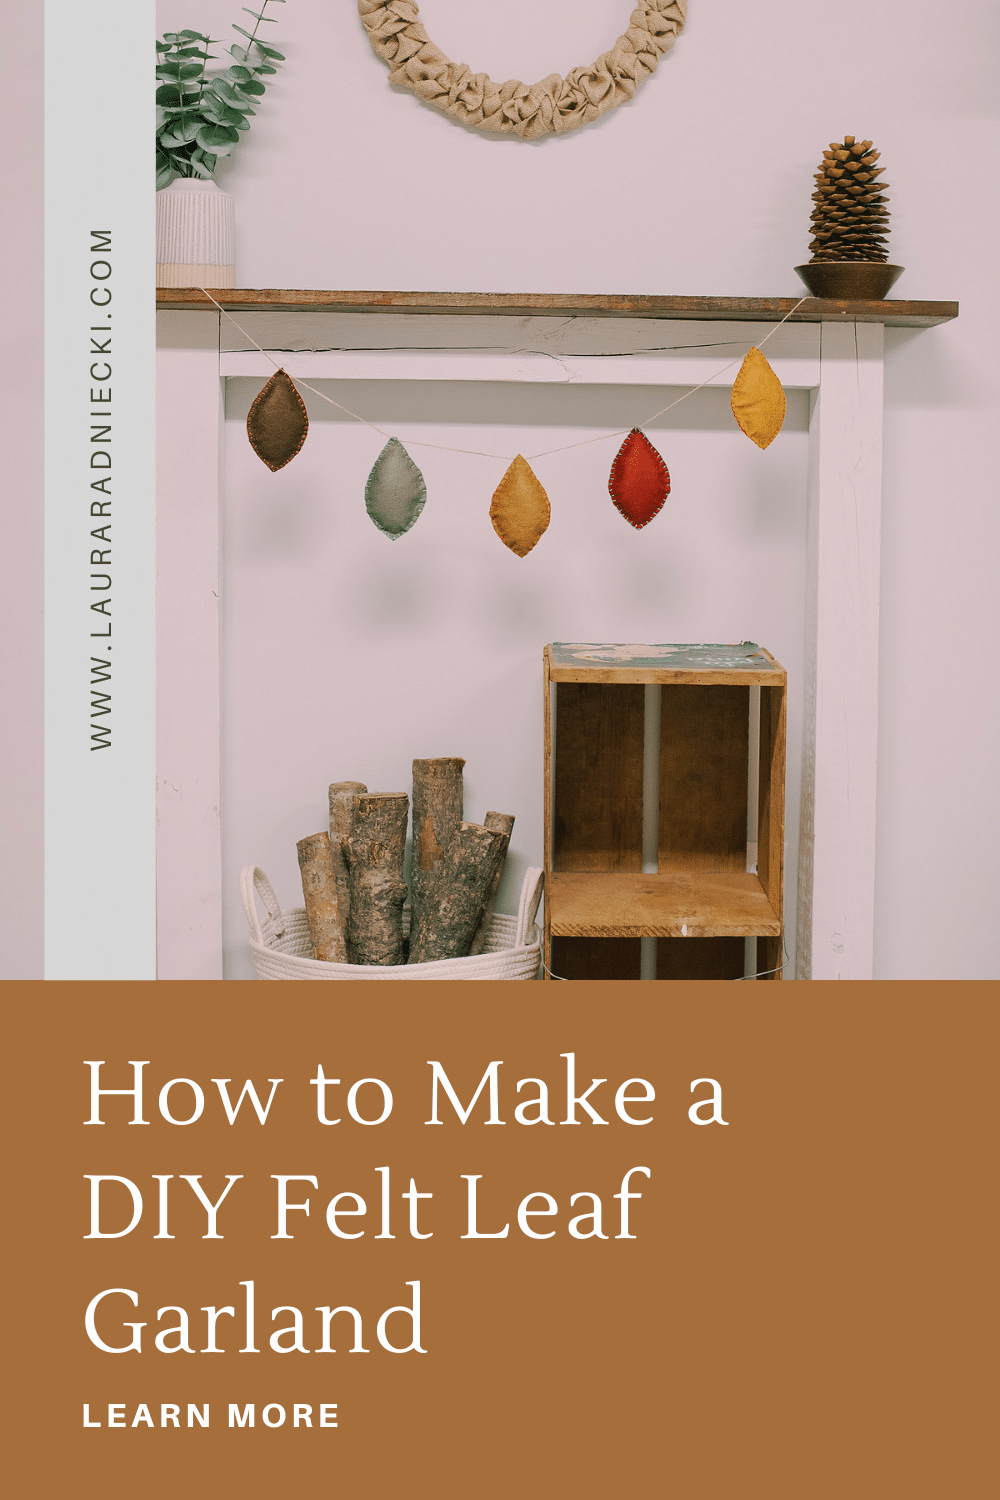 How to make a DIY felt leaf garland